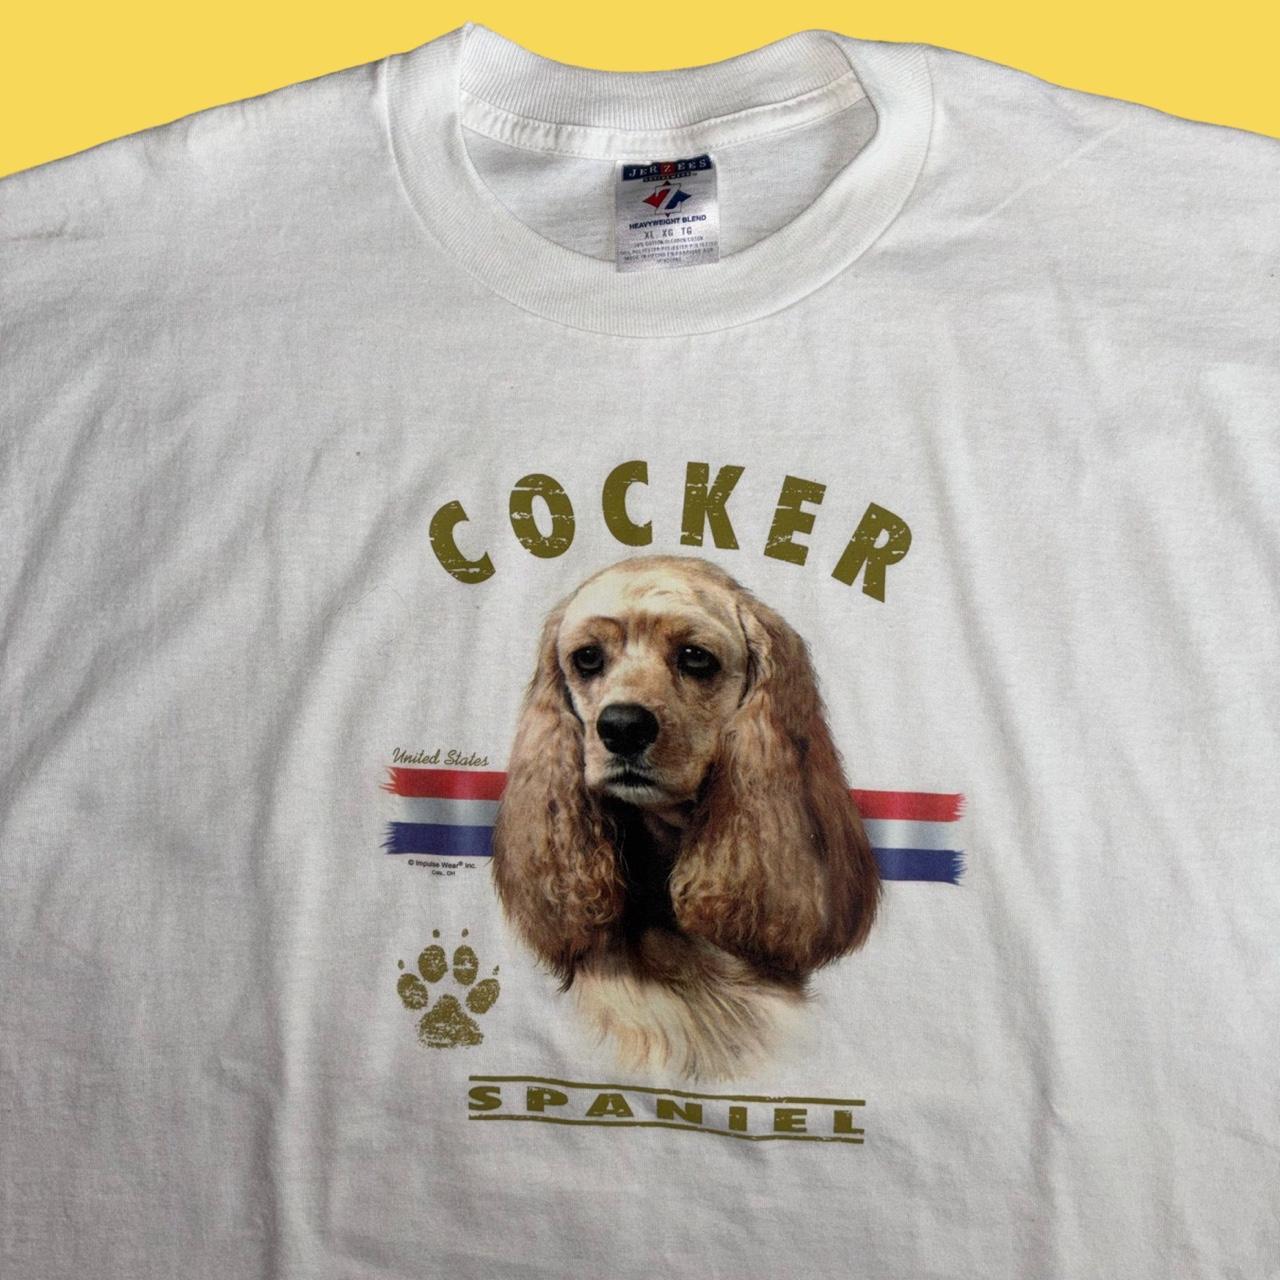 Vintage Cocker Spaniel Dog T-shirt Size... - Depop